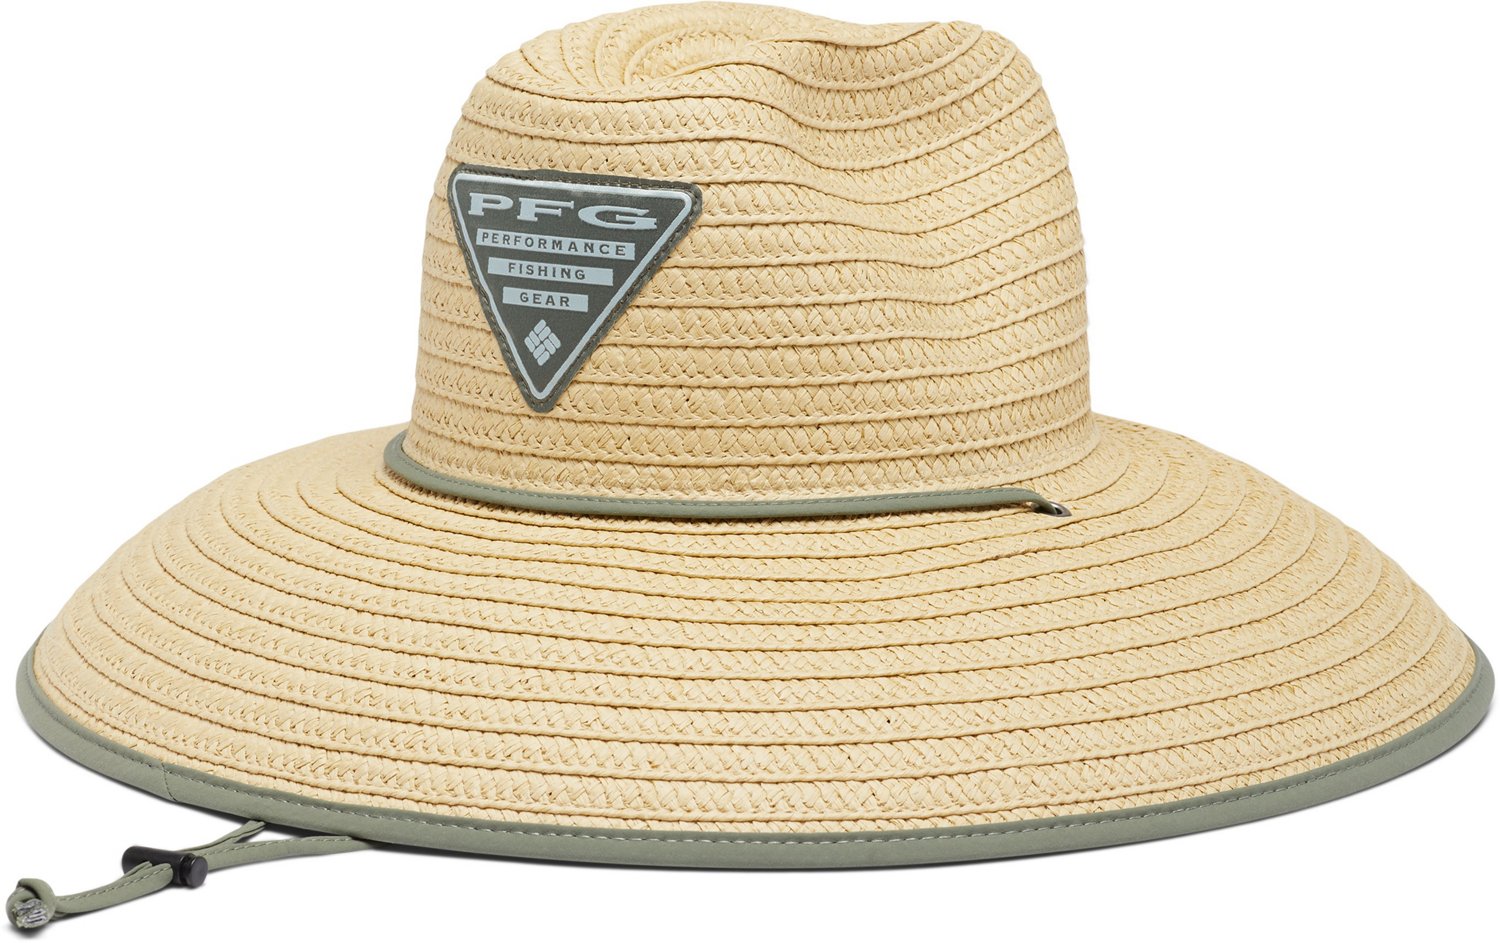 Columbia Sportswear Men's PFG Straw Lifeguard Hat